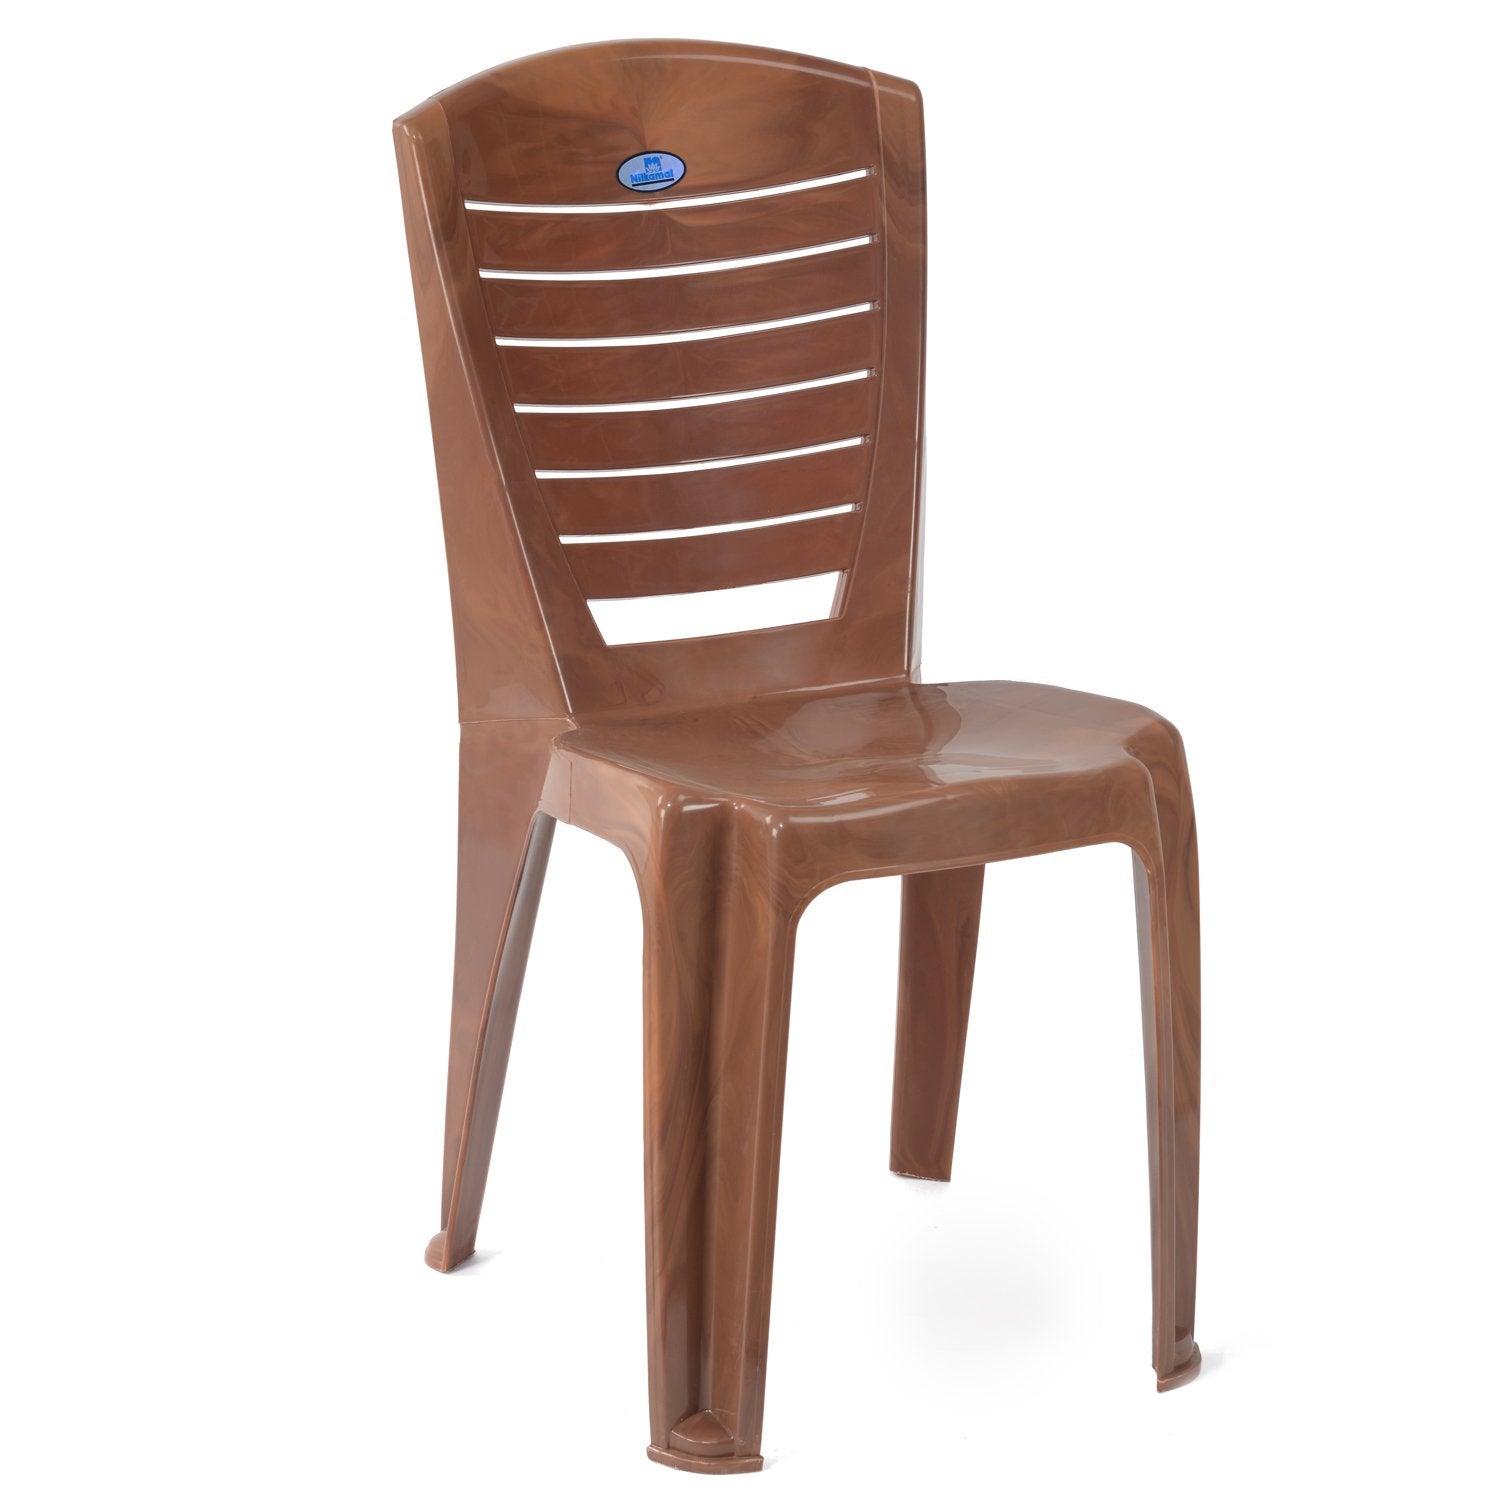 Nilkamal wooden chair